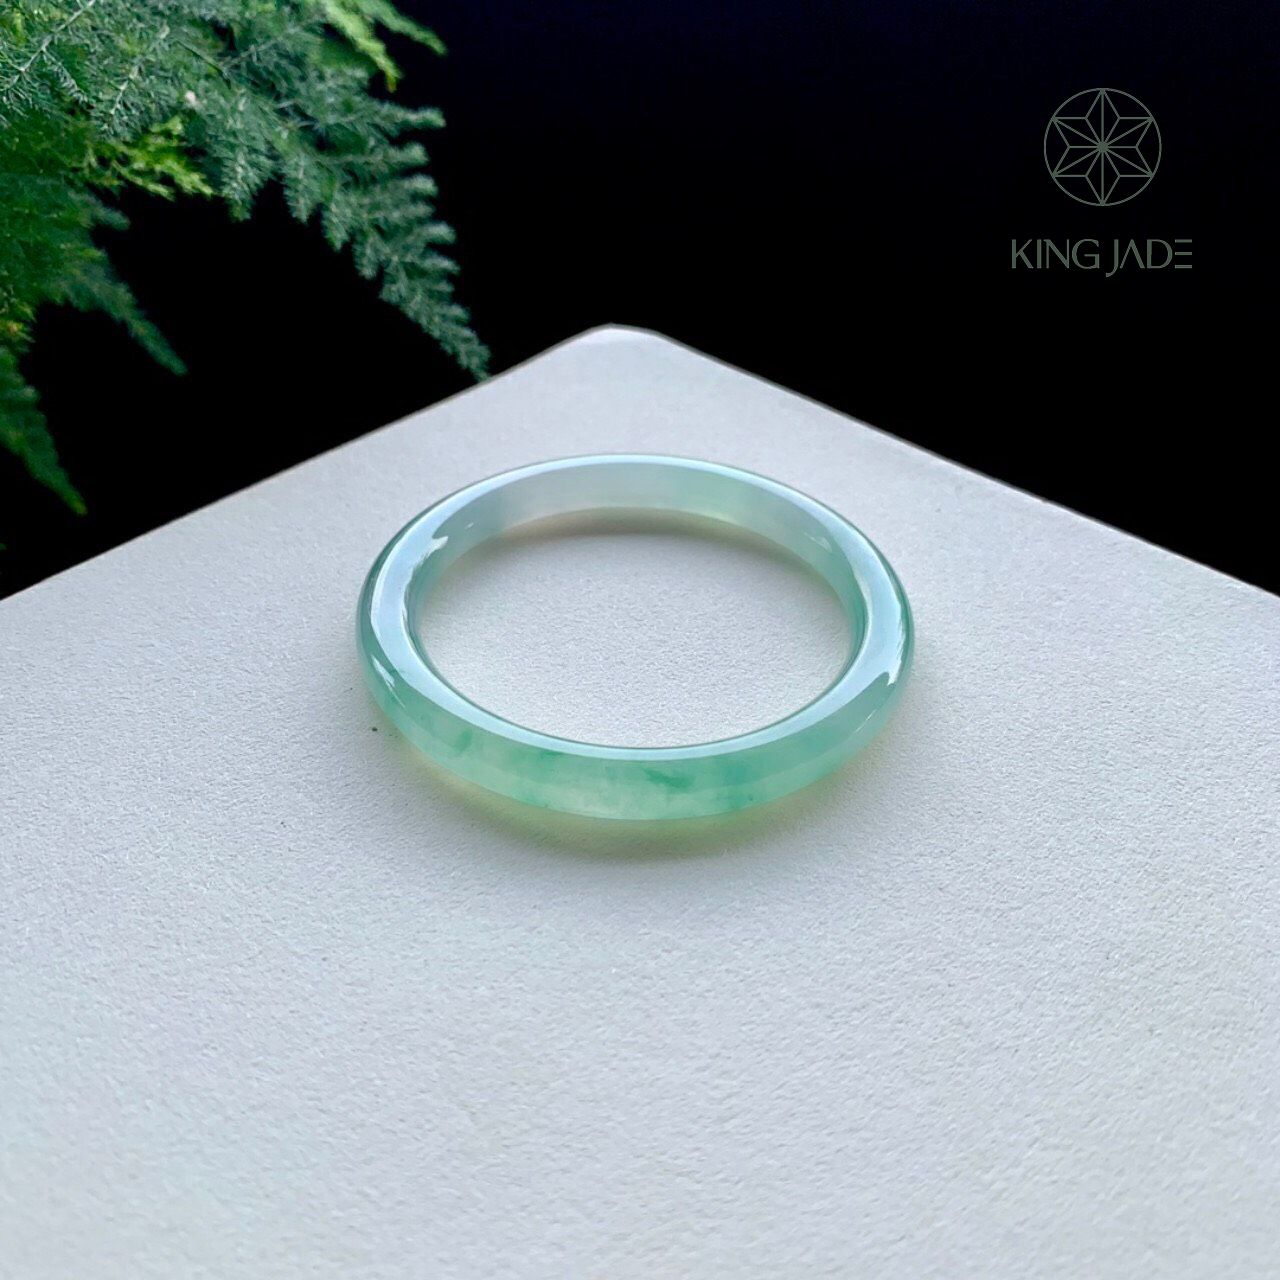 Vòng Ngọc Phỉ Thúy King Jade 029 - Nét Đẹp Thuần Túy